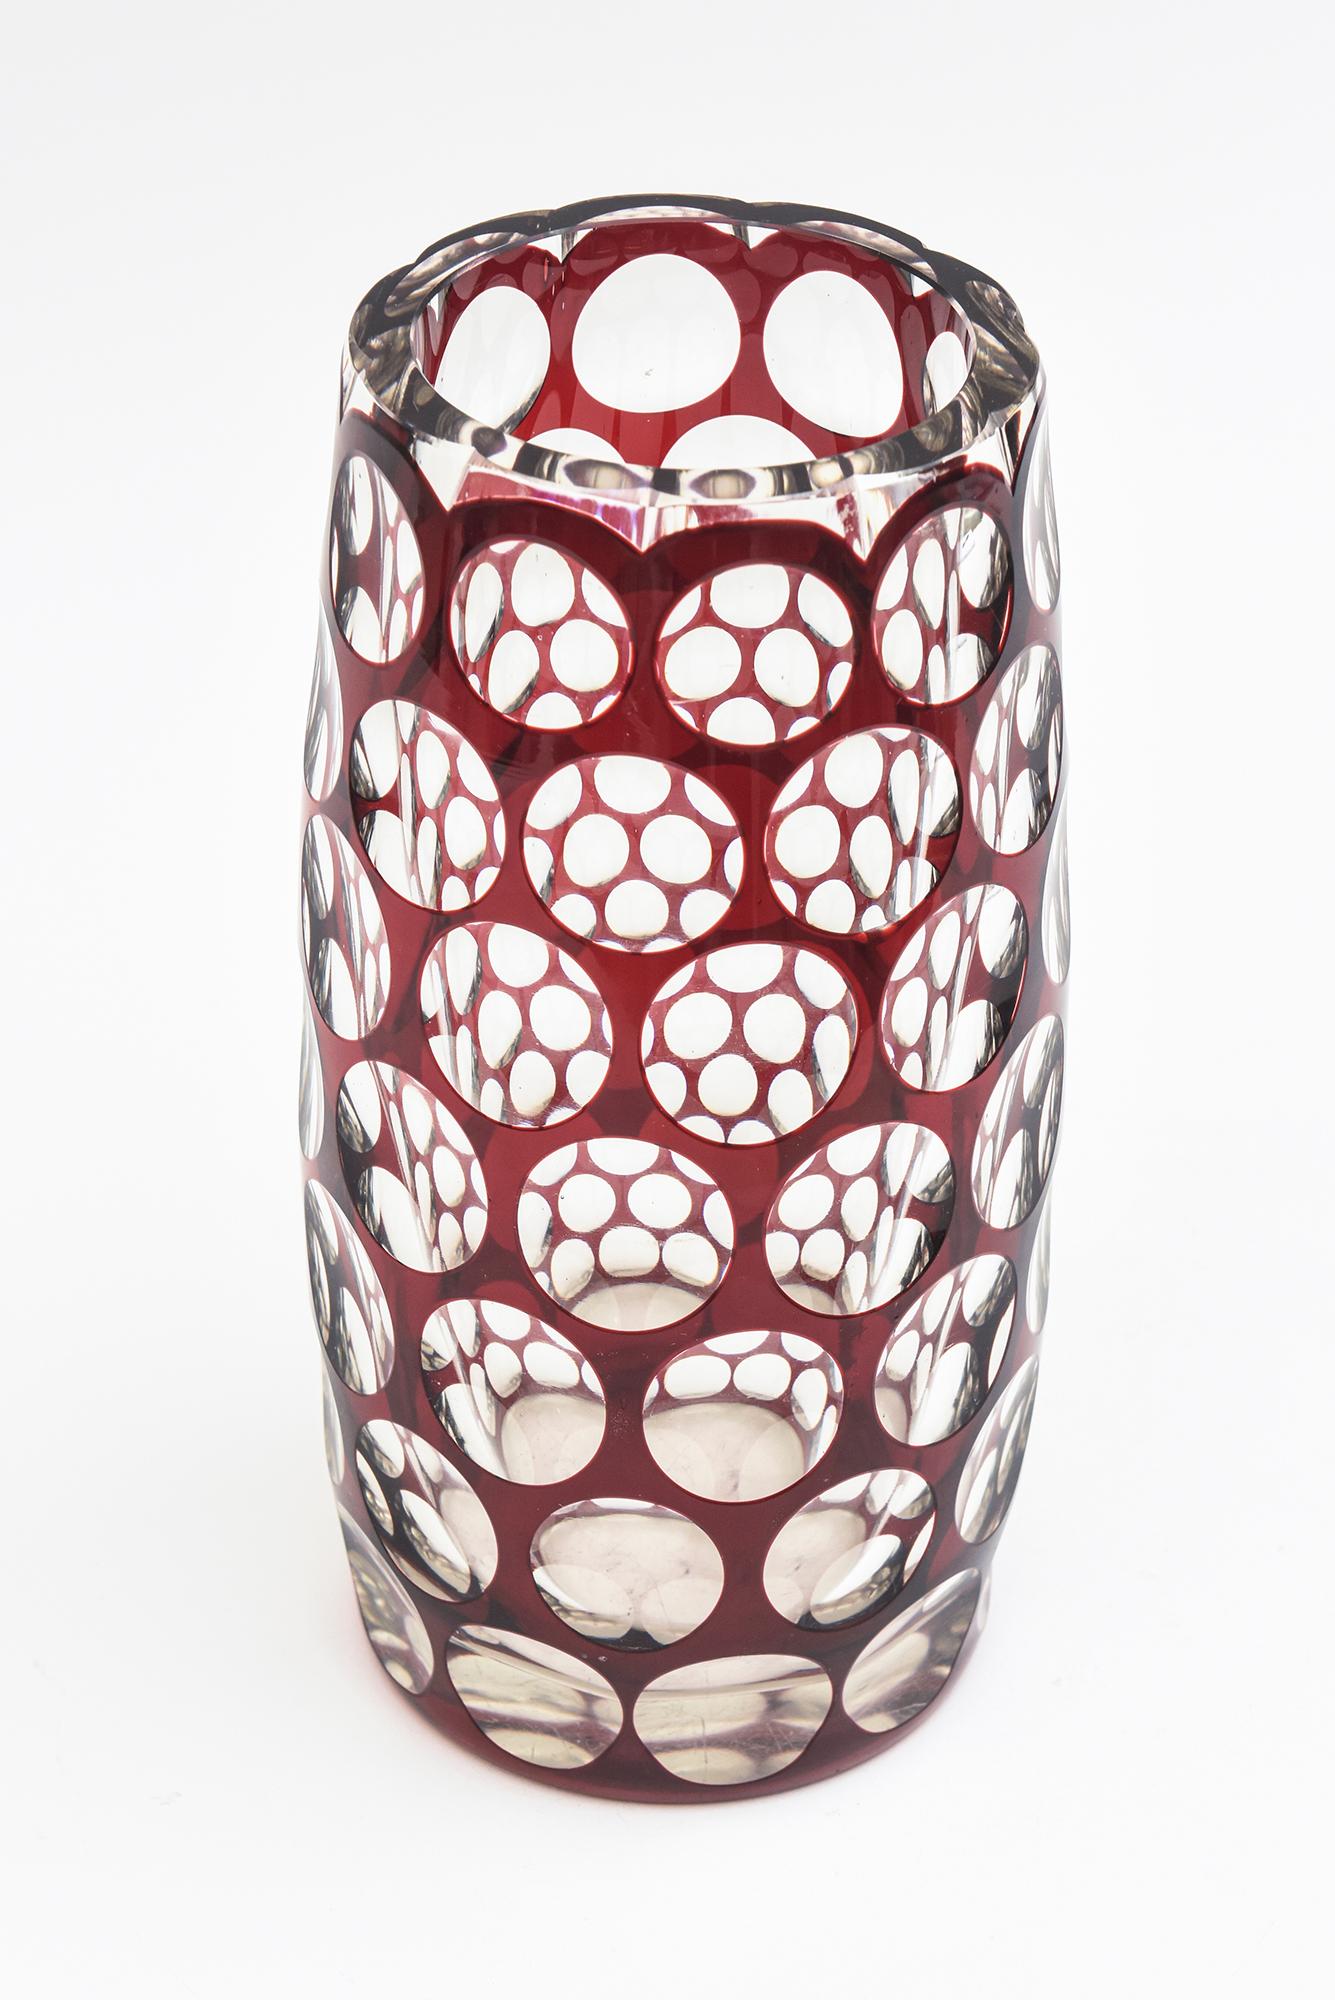 Ce superbe vase vintage en verre taillé rouge bordeaux et transparent présente un motif en nid d'abeilles qui reflète une conception optique. Il ressemble à un mélange d'art déco et de modernité du milieu du siècle dernier. Le bord est plat et poli